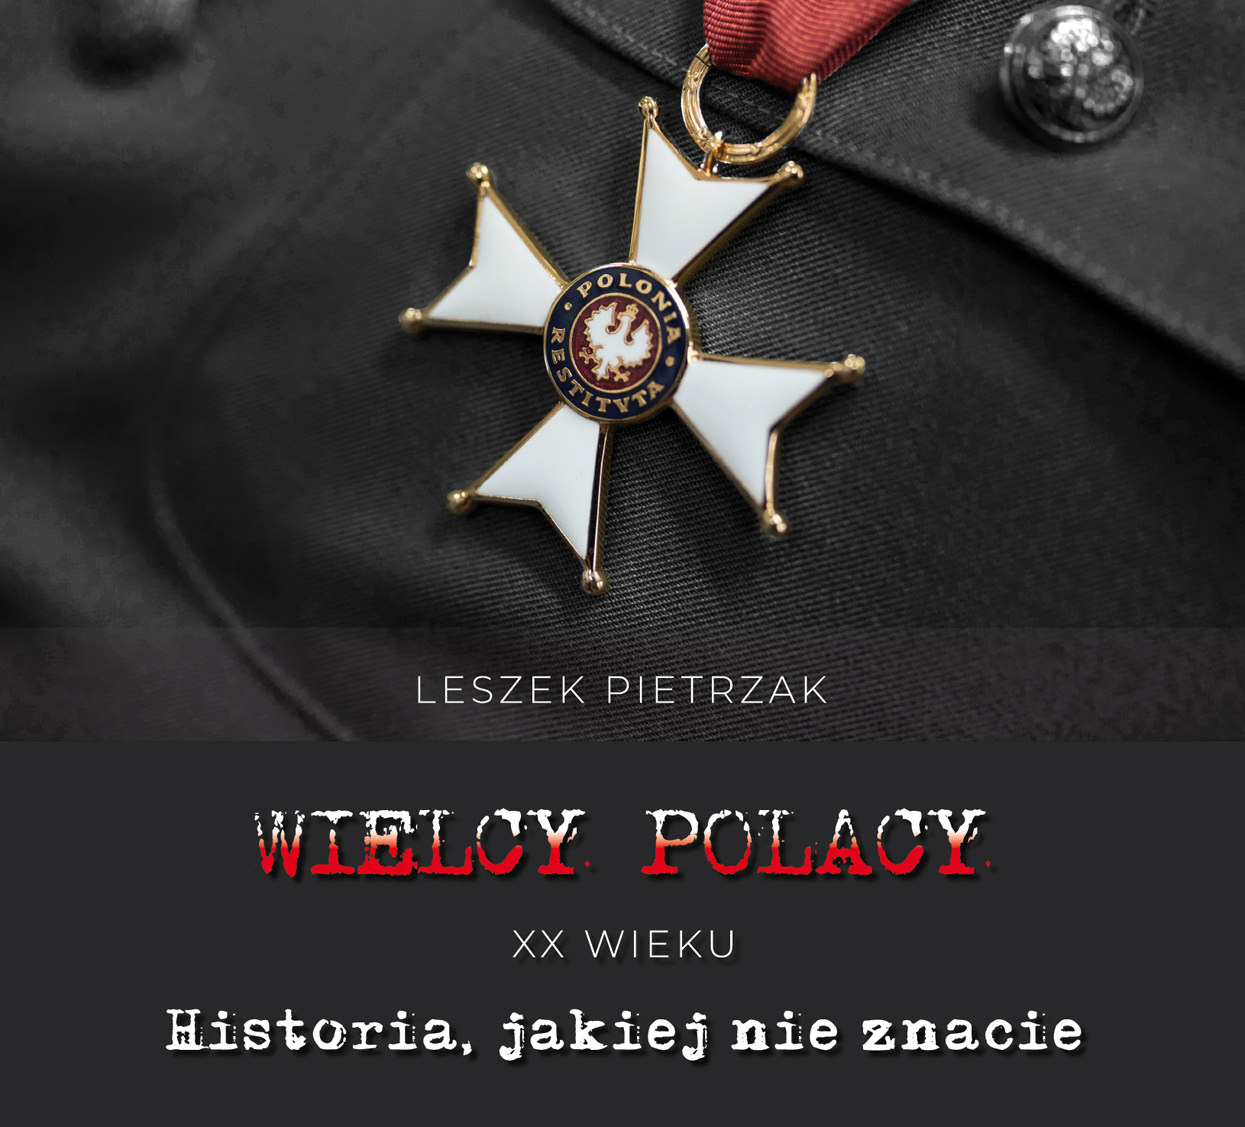 WIELCY POLACY XX WIEKU - nowy audiobook